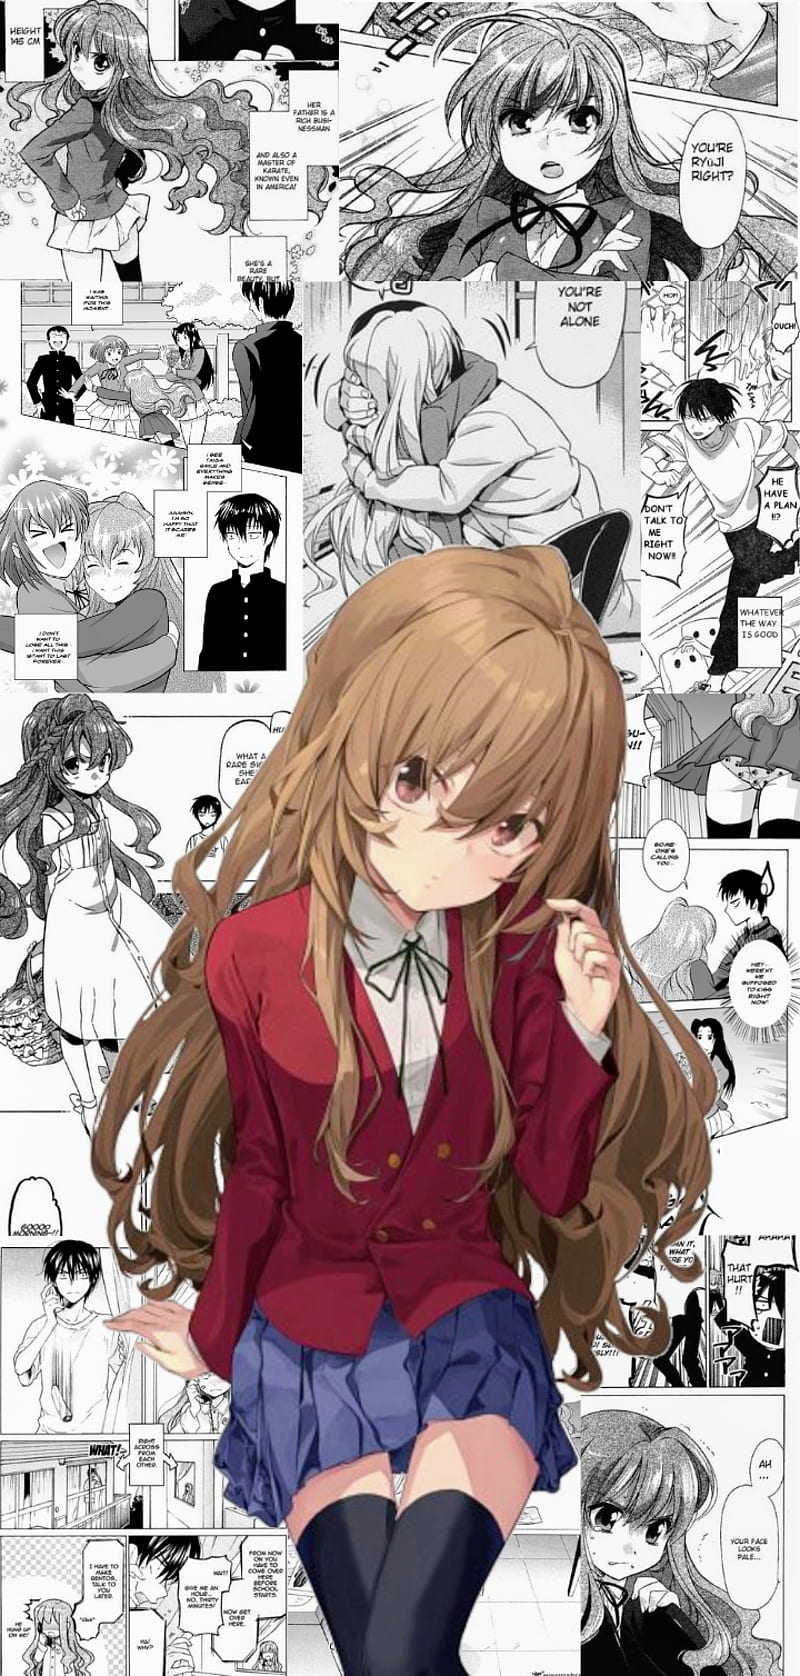 Ayanokouji Kiyotaka Icon  Anime, Tokyo aesthetic wallpaper anime, Anime  monochrome